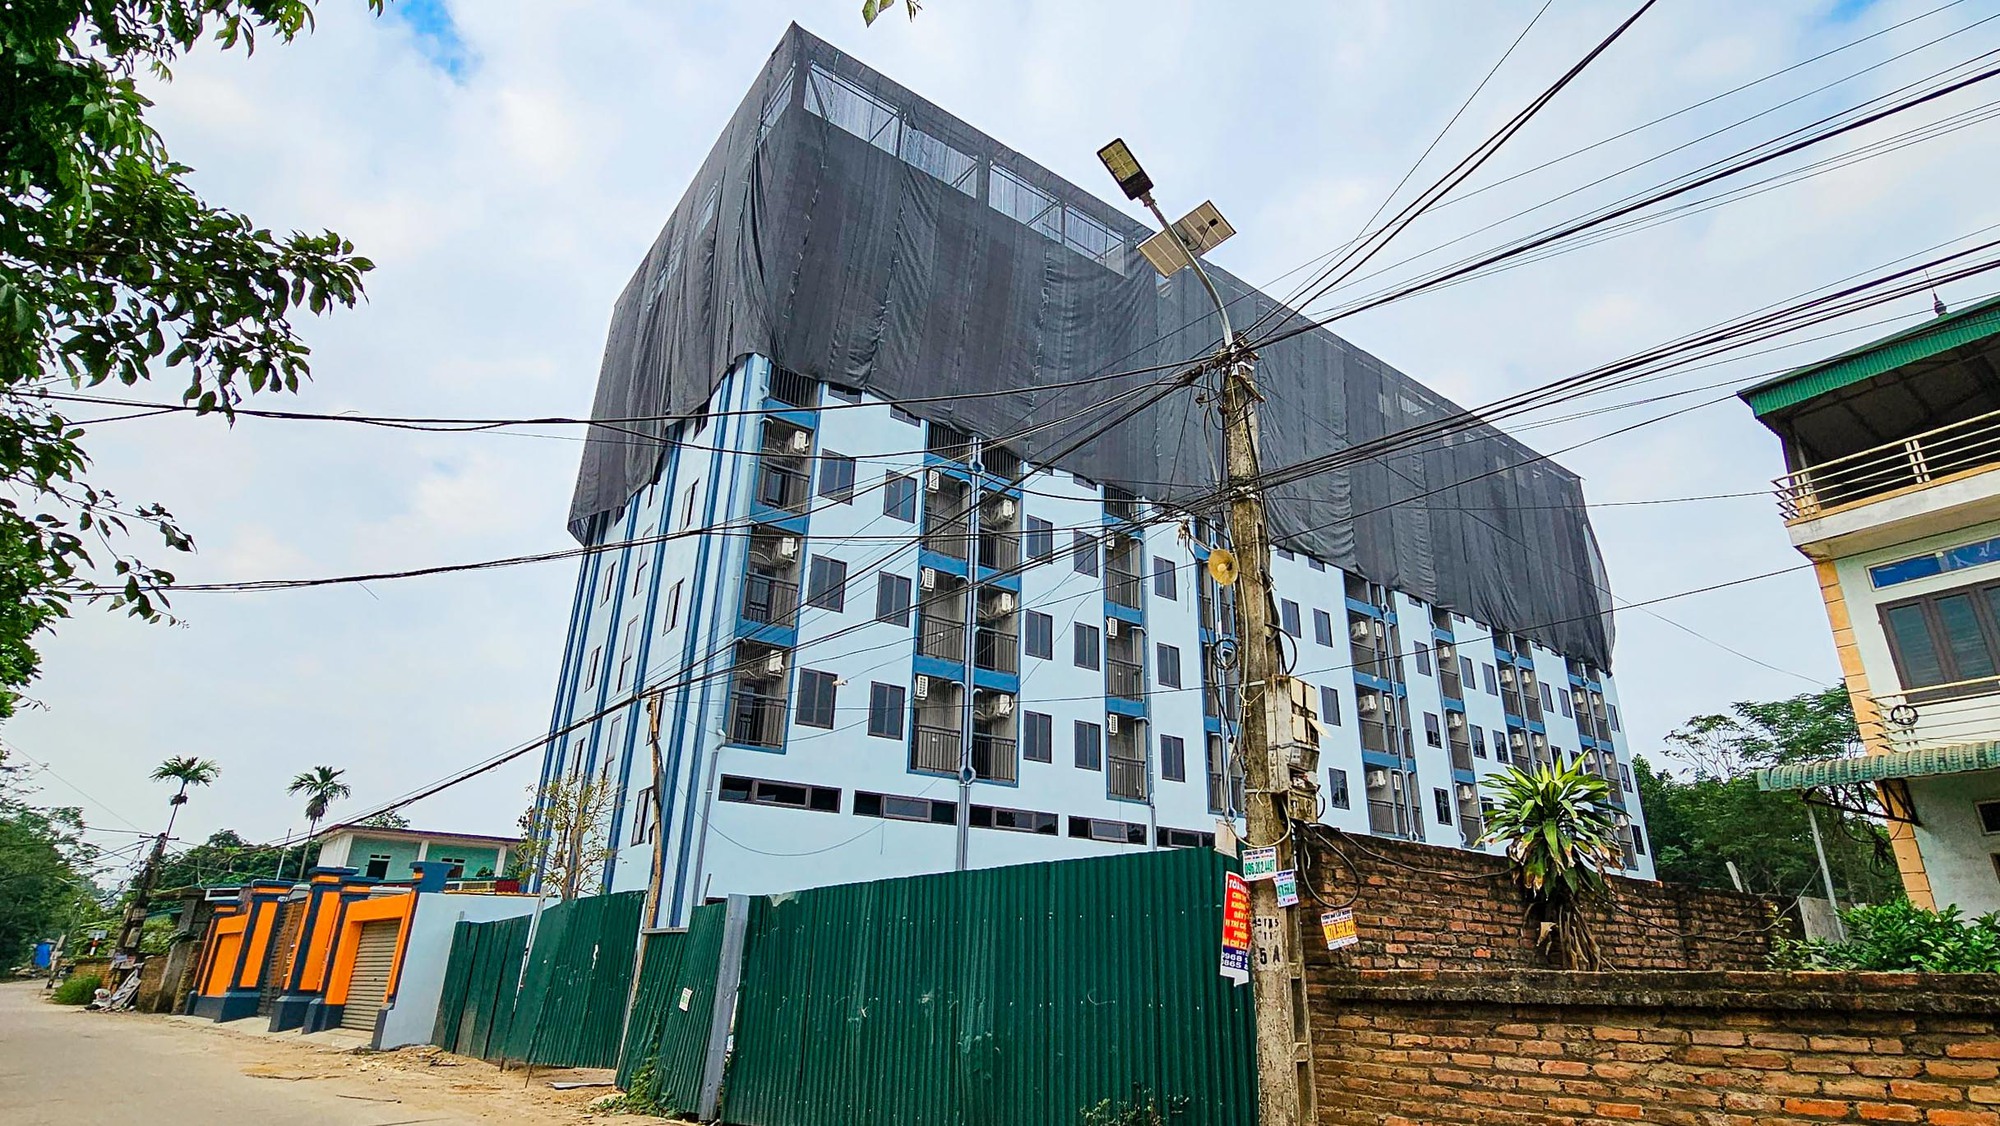 Chủ tịch huyện Thạch Thất muốn các xã được xây nhà cao tối đa 9 tầng - Ảnh 3.